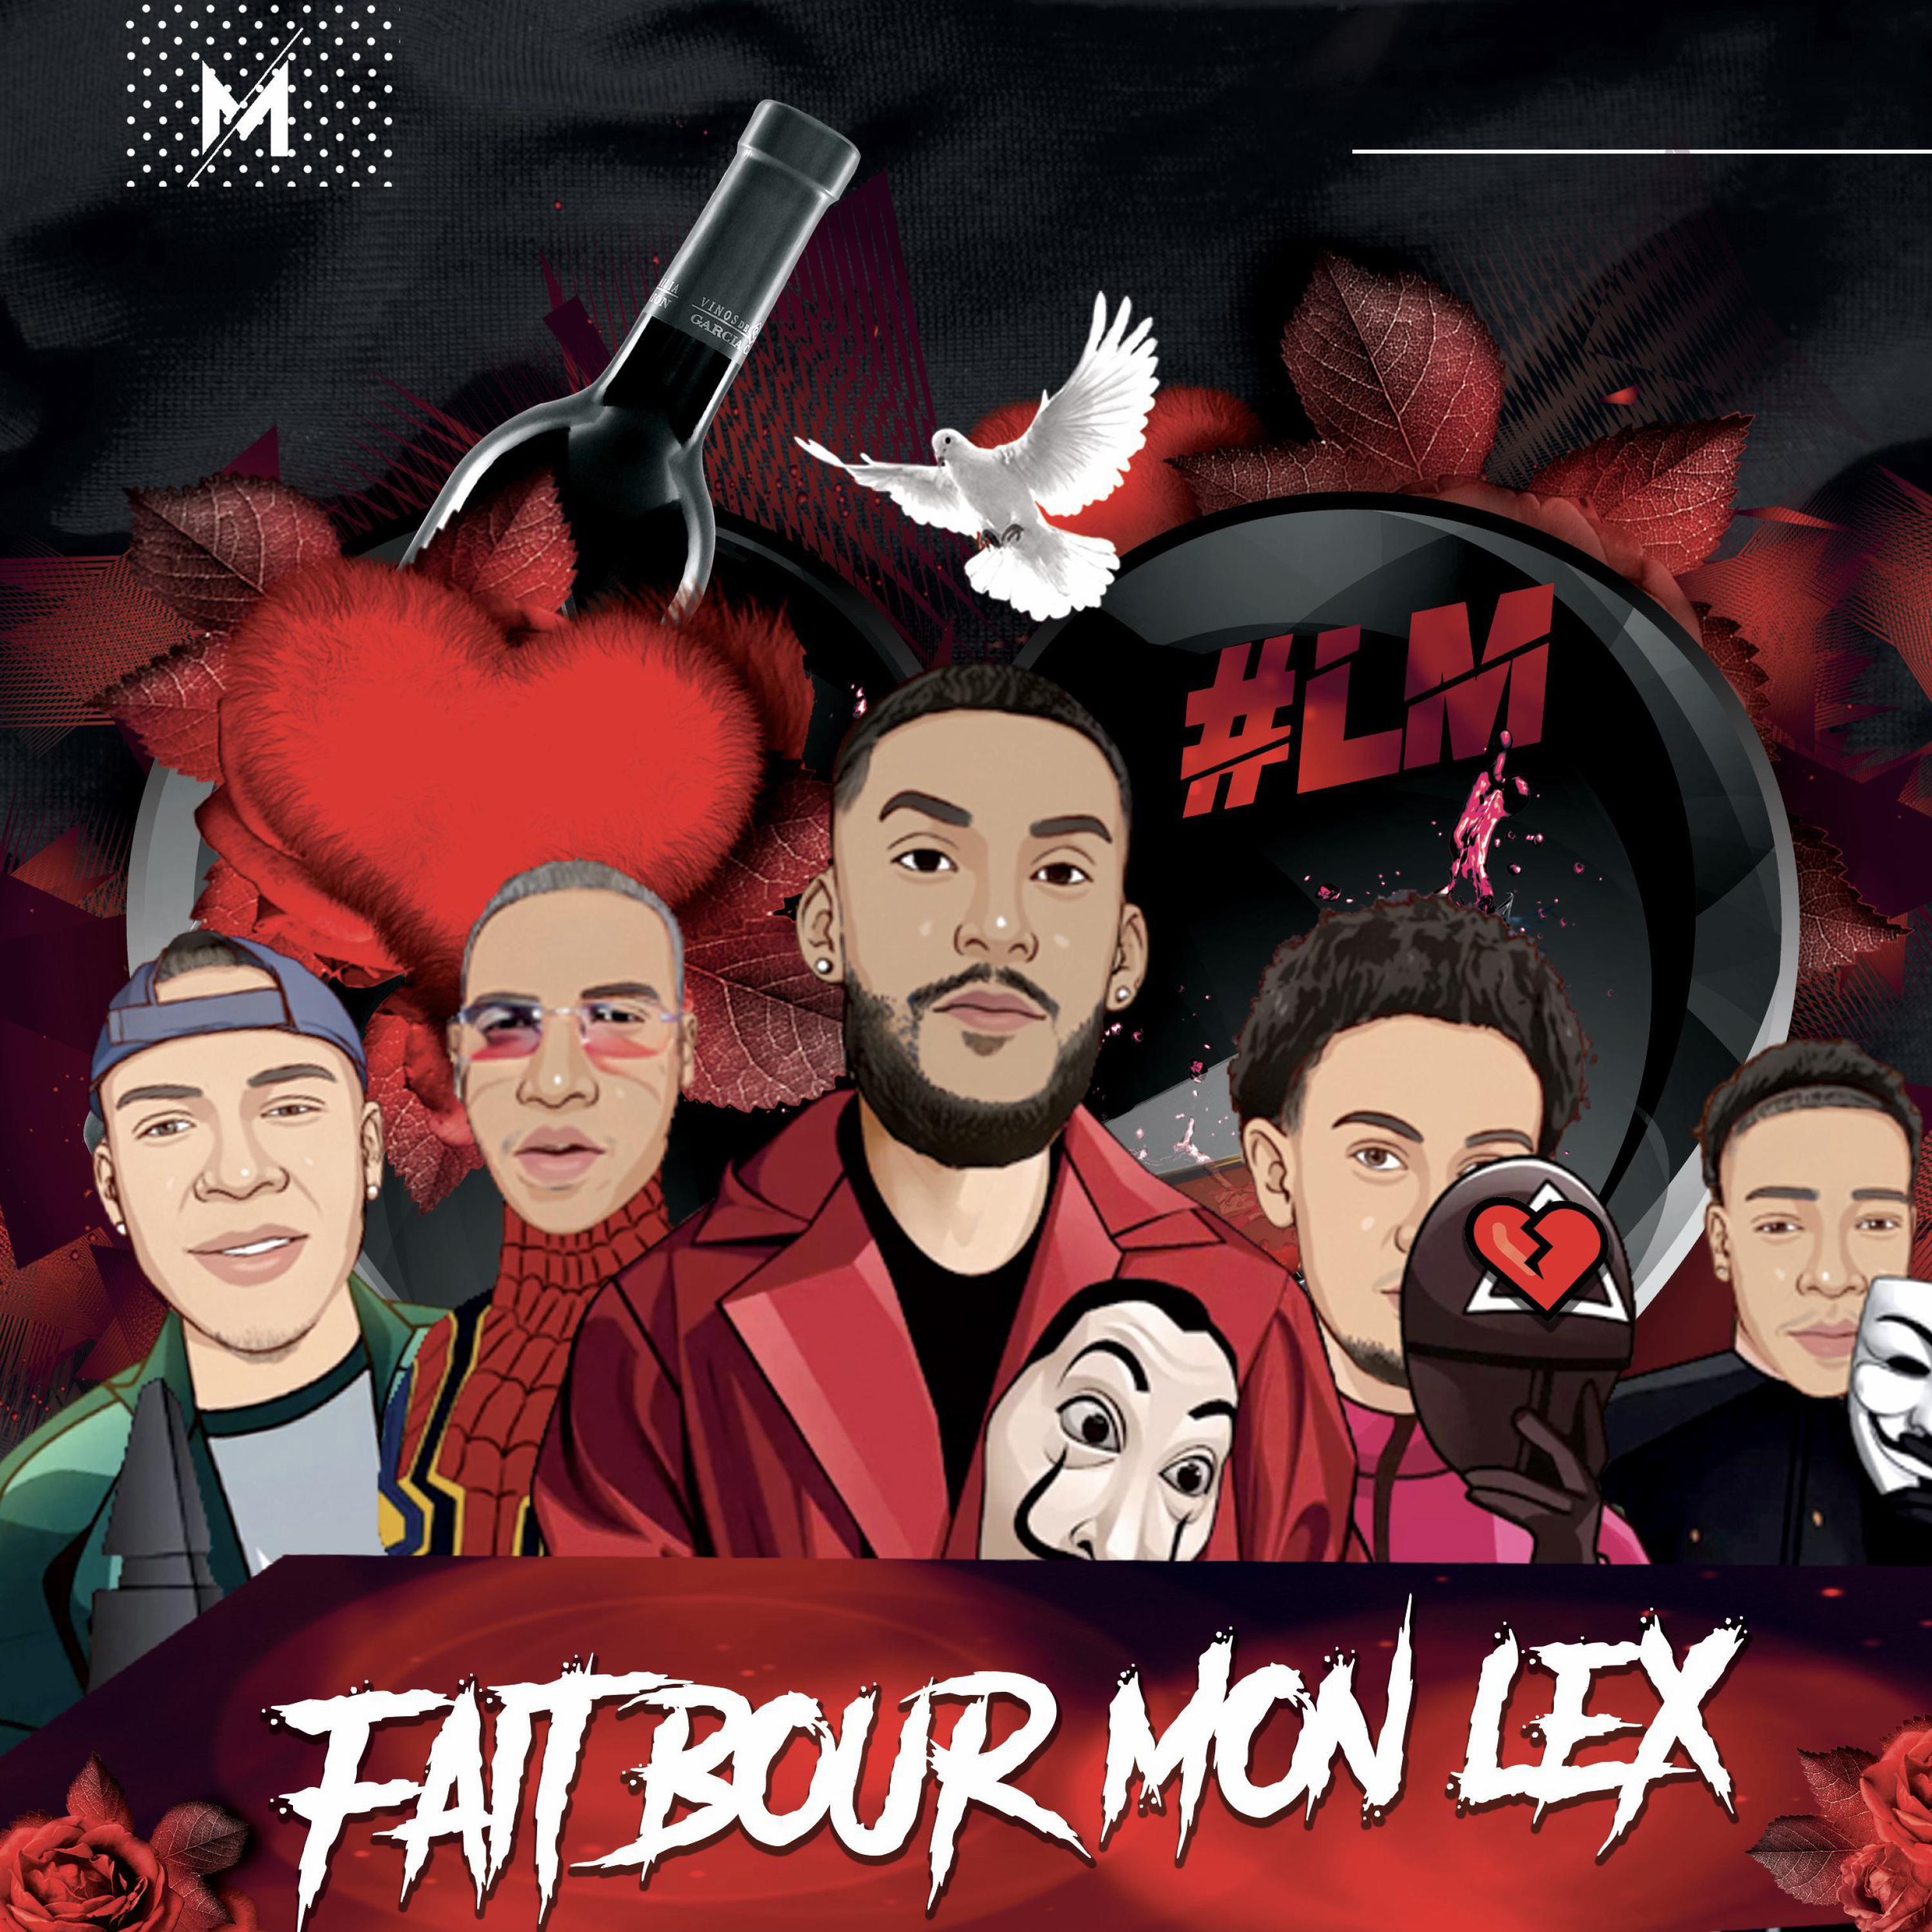 DJ Mky - FAIT BOUR MON L'EX (feat. Micka Lcs, Niito & Jenny)